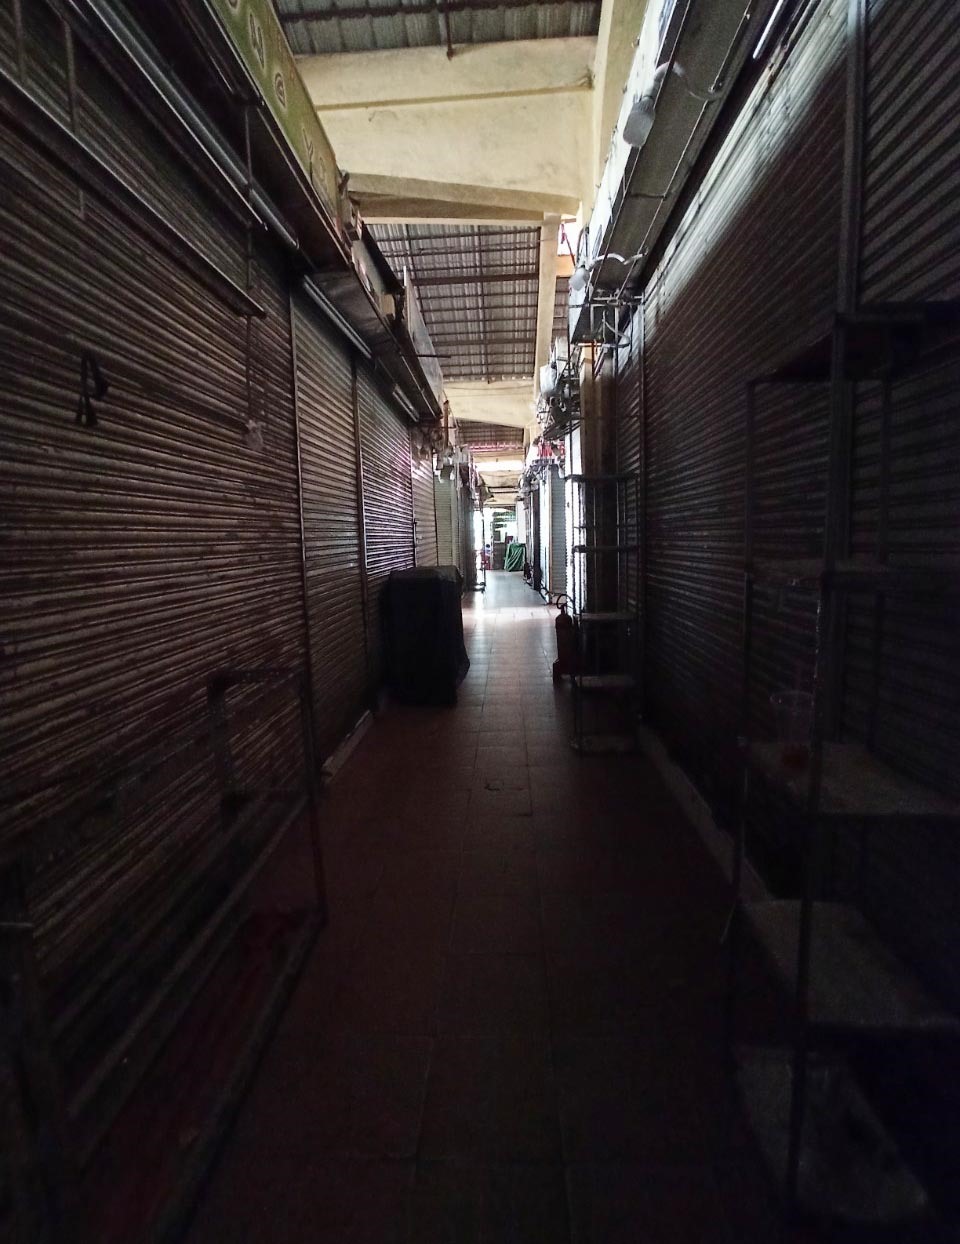 Nhiều sạp đóng cửa, khiến một góc trong chợ trở nên tối. Ảnh: Chân Phúc